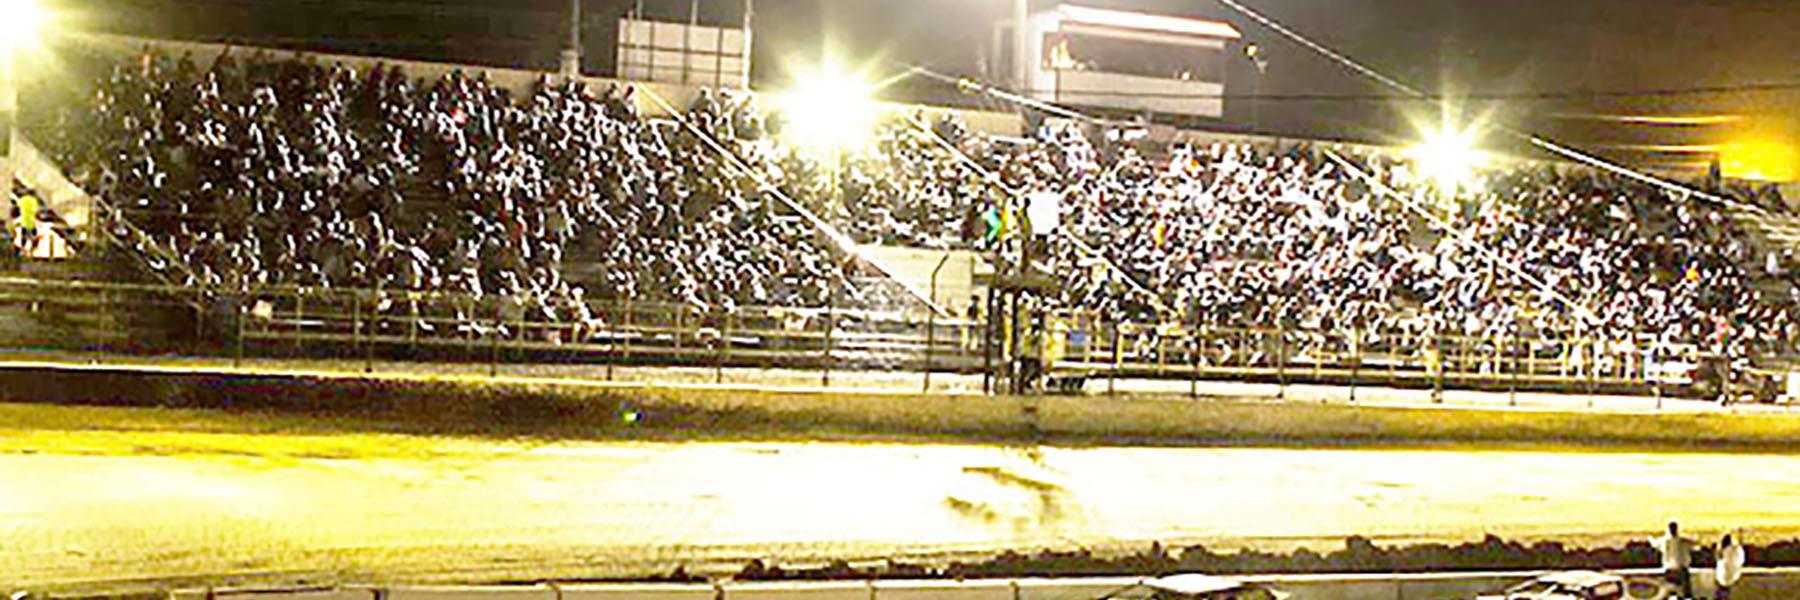 6/25/2022 - Tri-State Speedway